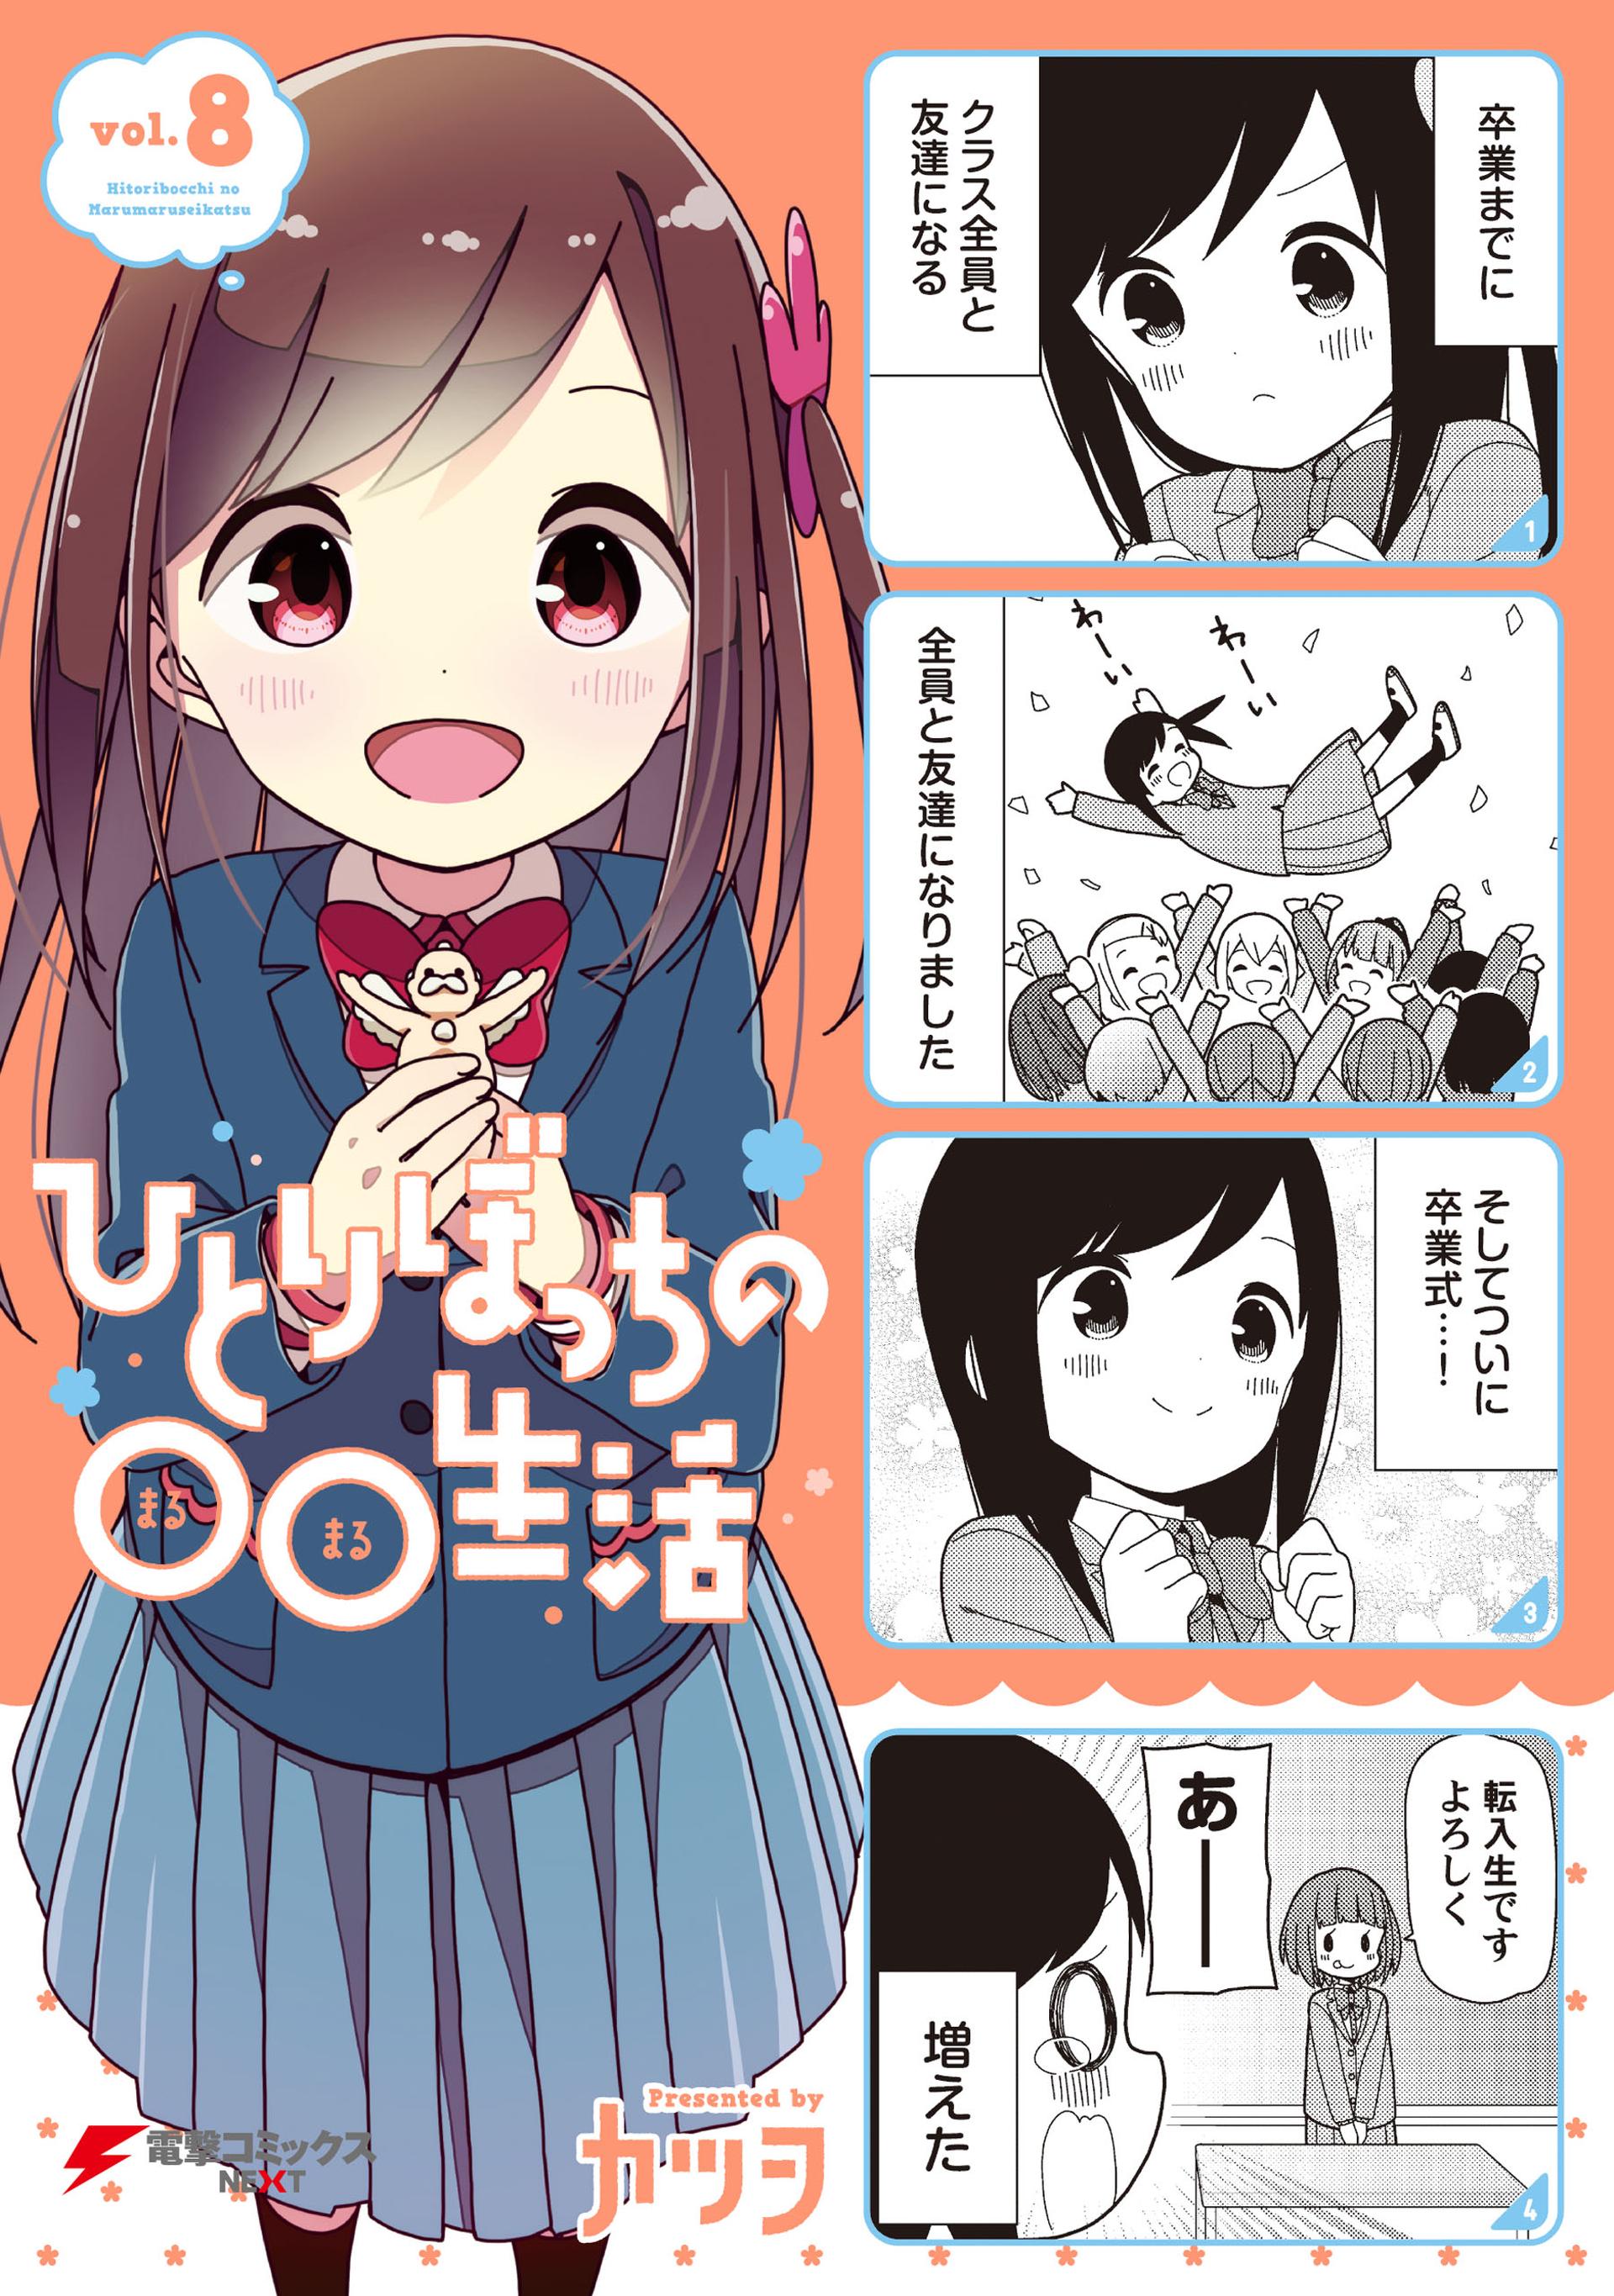 Manga Hitori Bocchi será finalizado no mês de abril